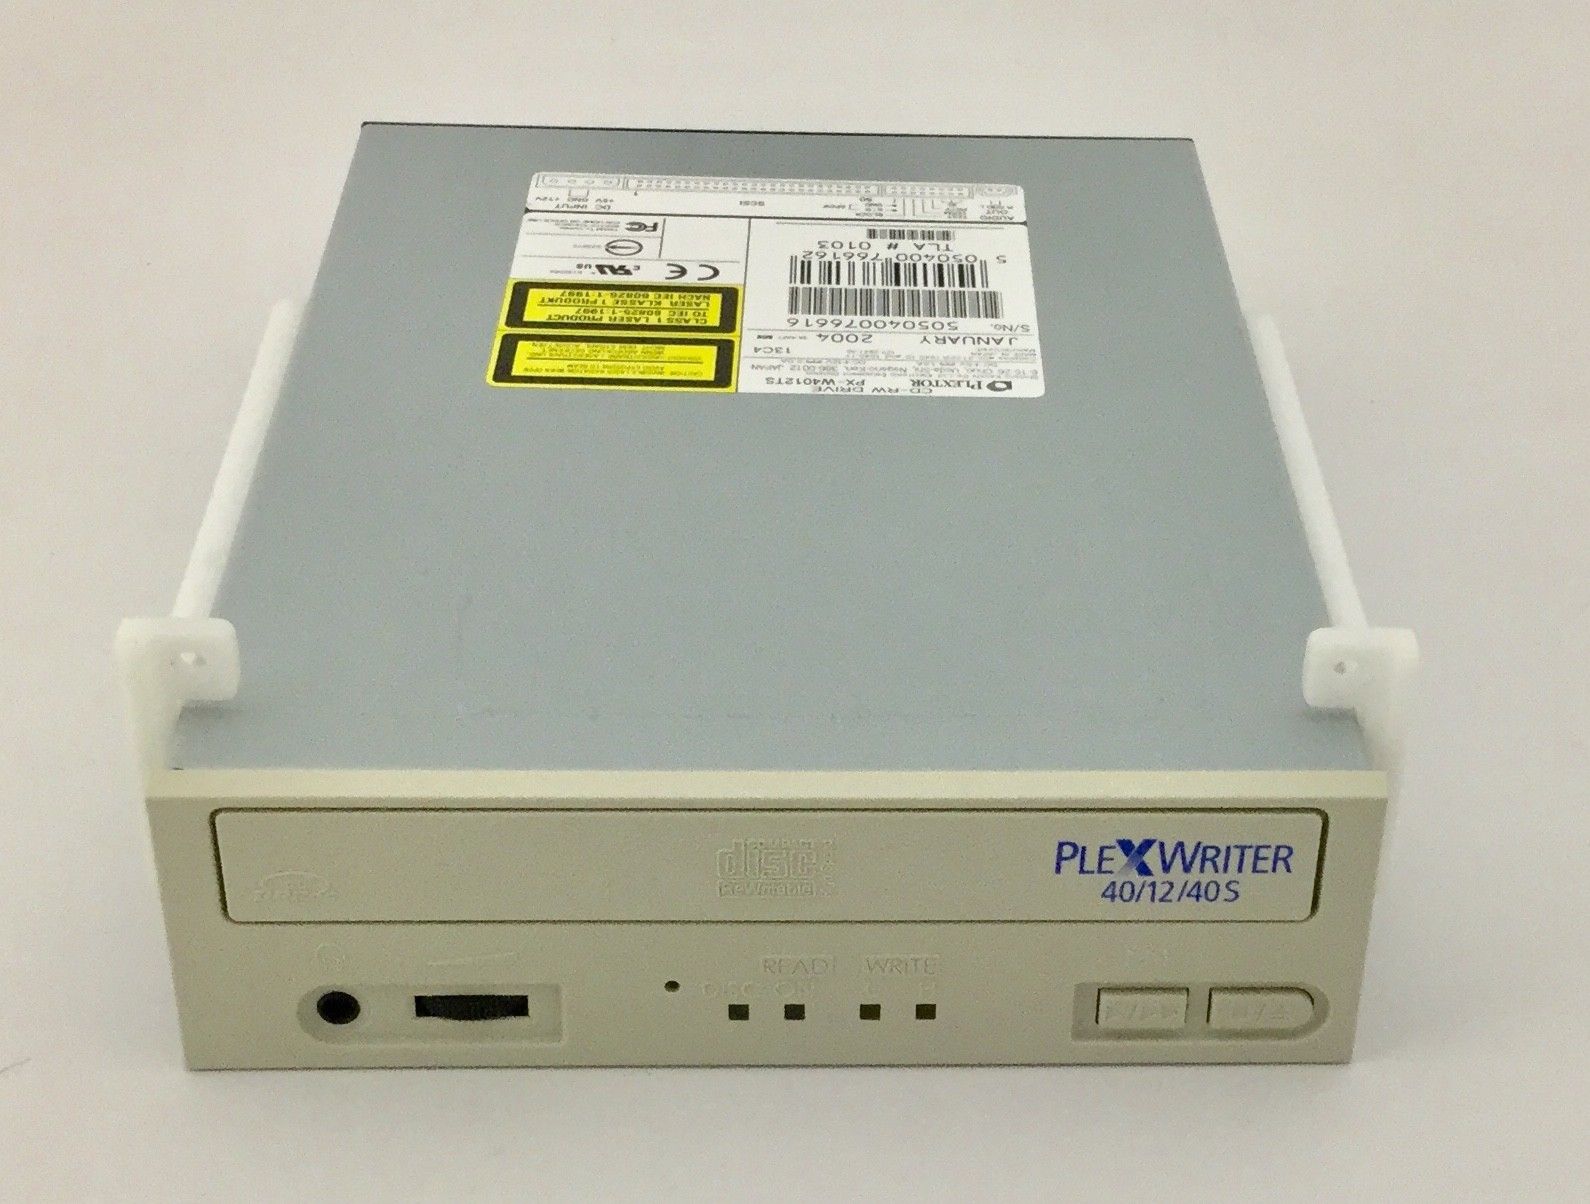 Toshiba SSA-770A Ultrasound PX-W4012TS Plextor CD-RW Drive DIAGNOSTIC ULTRASOUND MACHINES FOR SALE